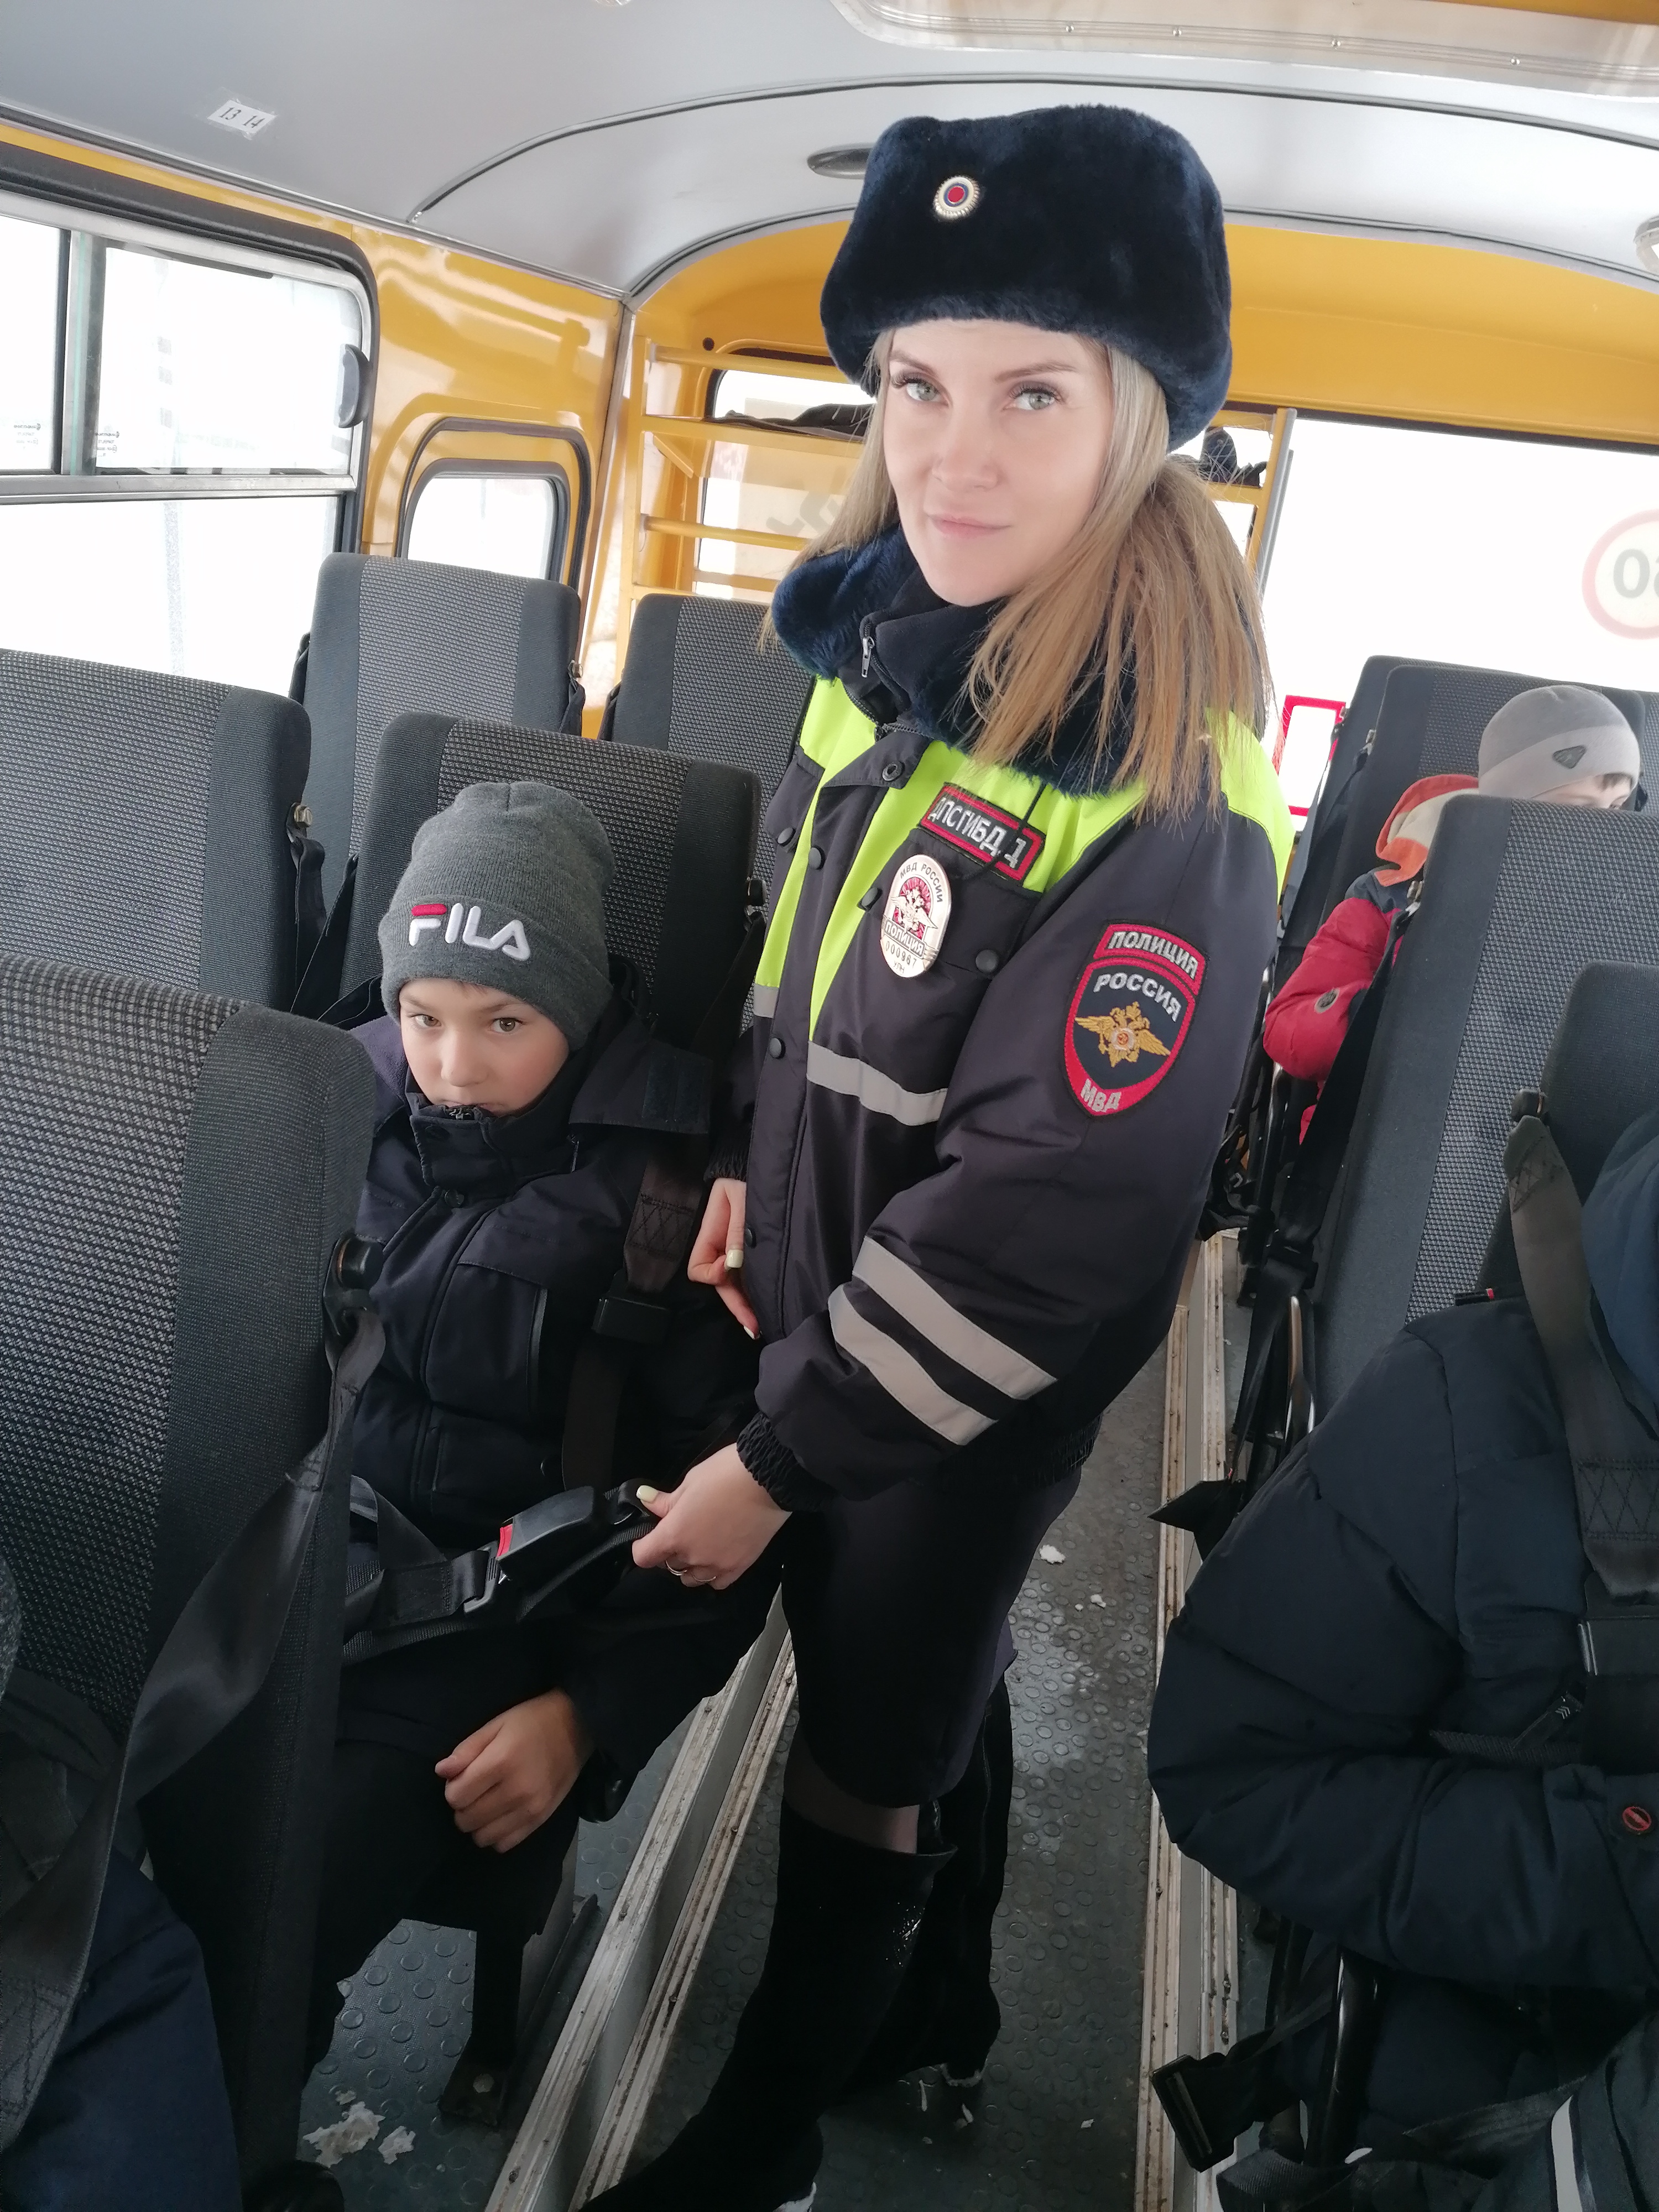 Сотрудники Госавтоинспекции и юные инспекторы организовали областной «Урок дорожной безопасности в школьных автобусах».